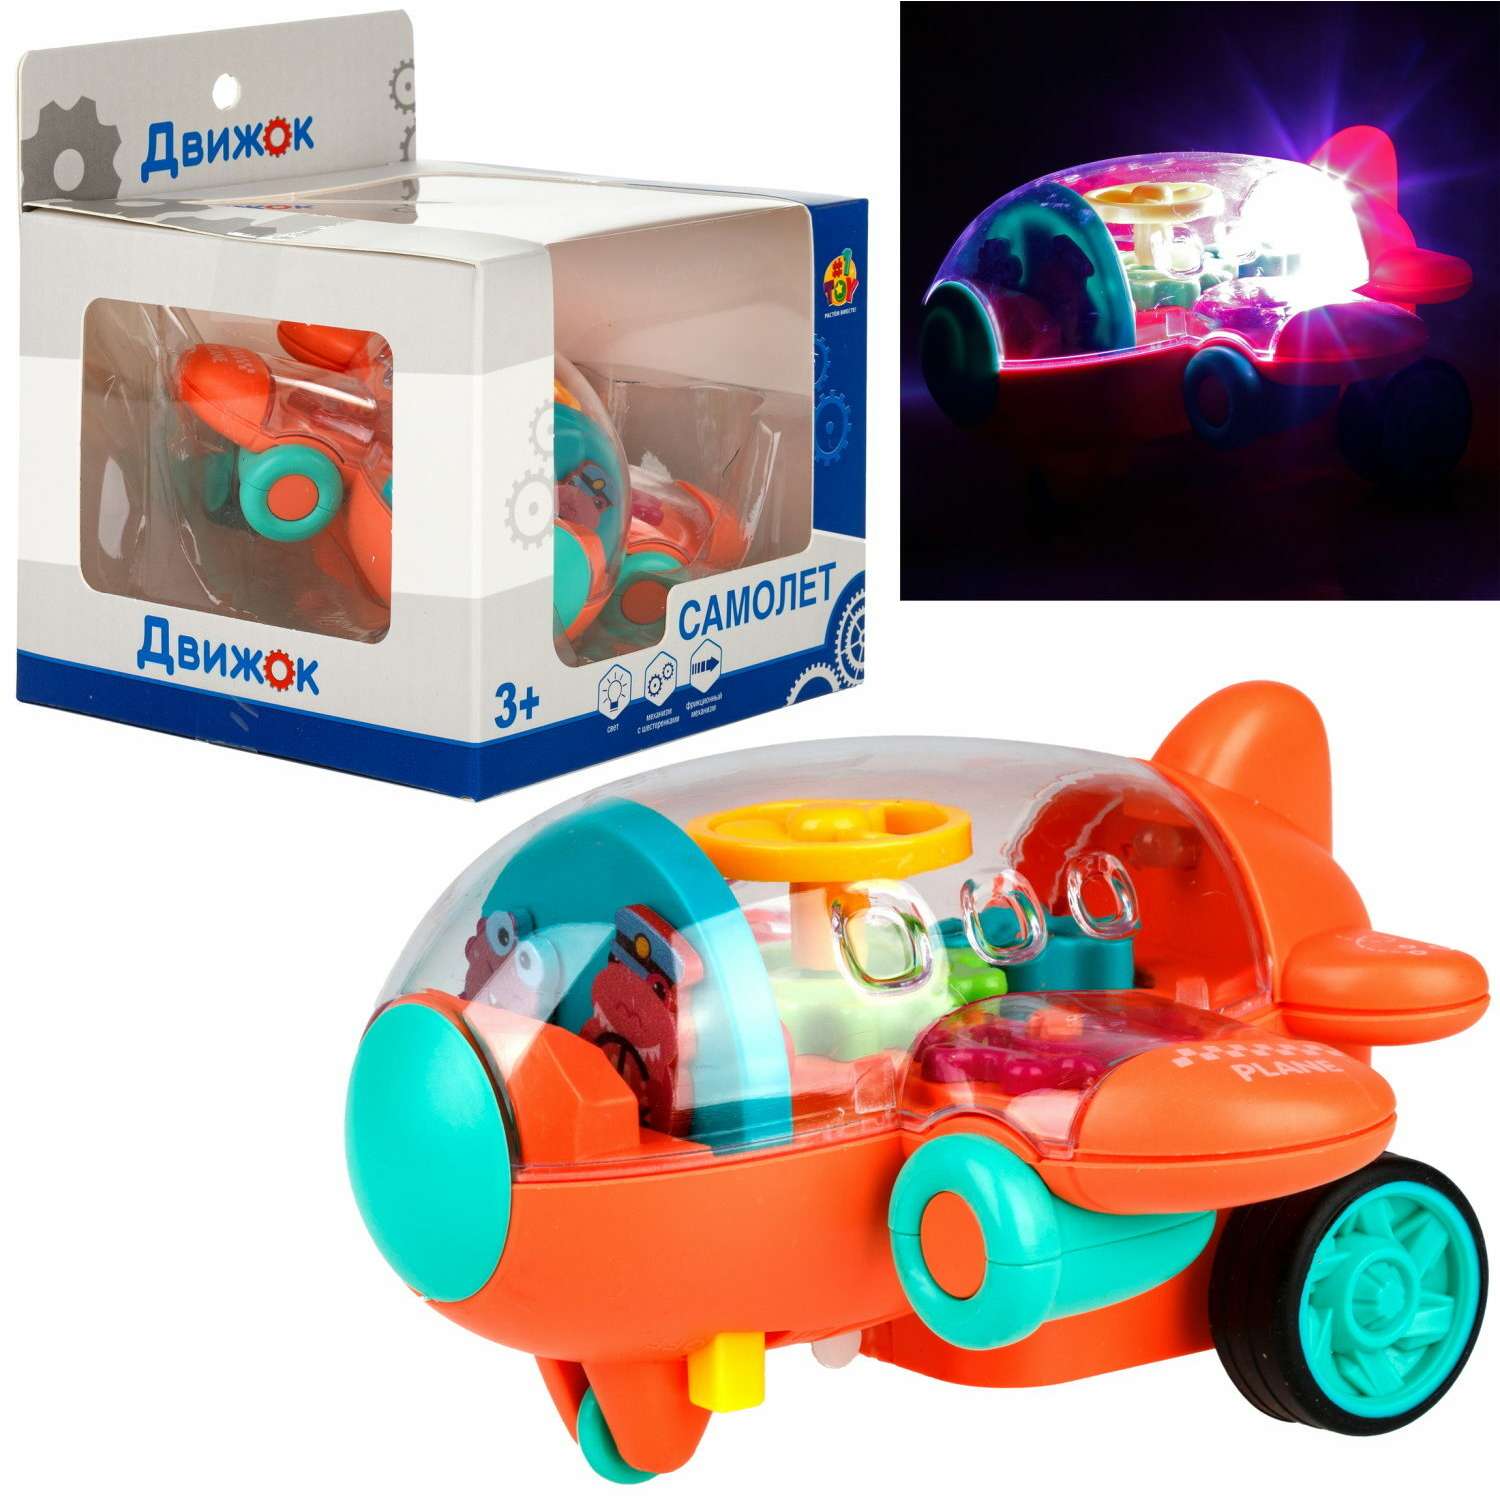 Самолет игрушка для детей 1TOY Движок оранжевый прозрачный с шестеренками светящийся на батарейках - фото 3